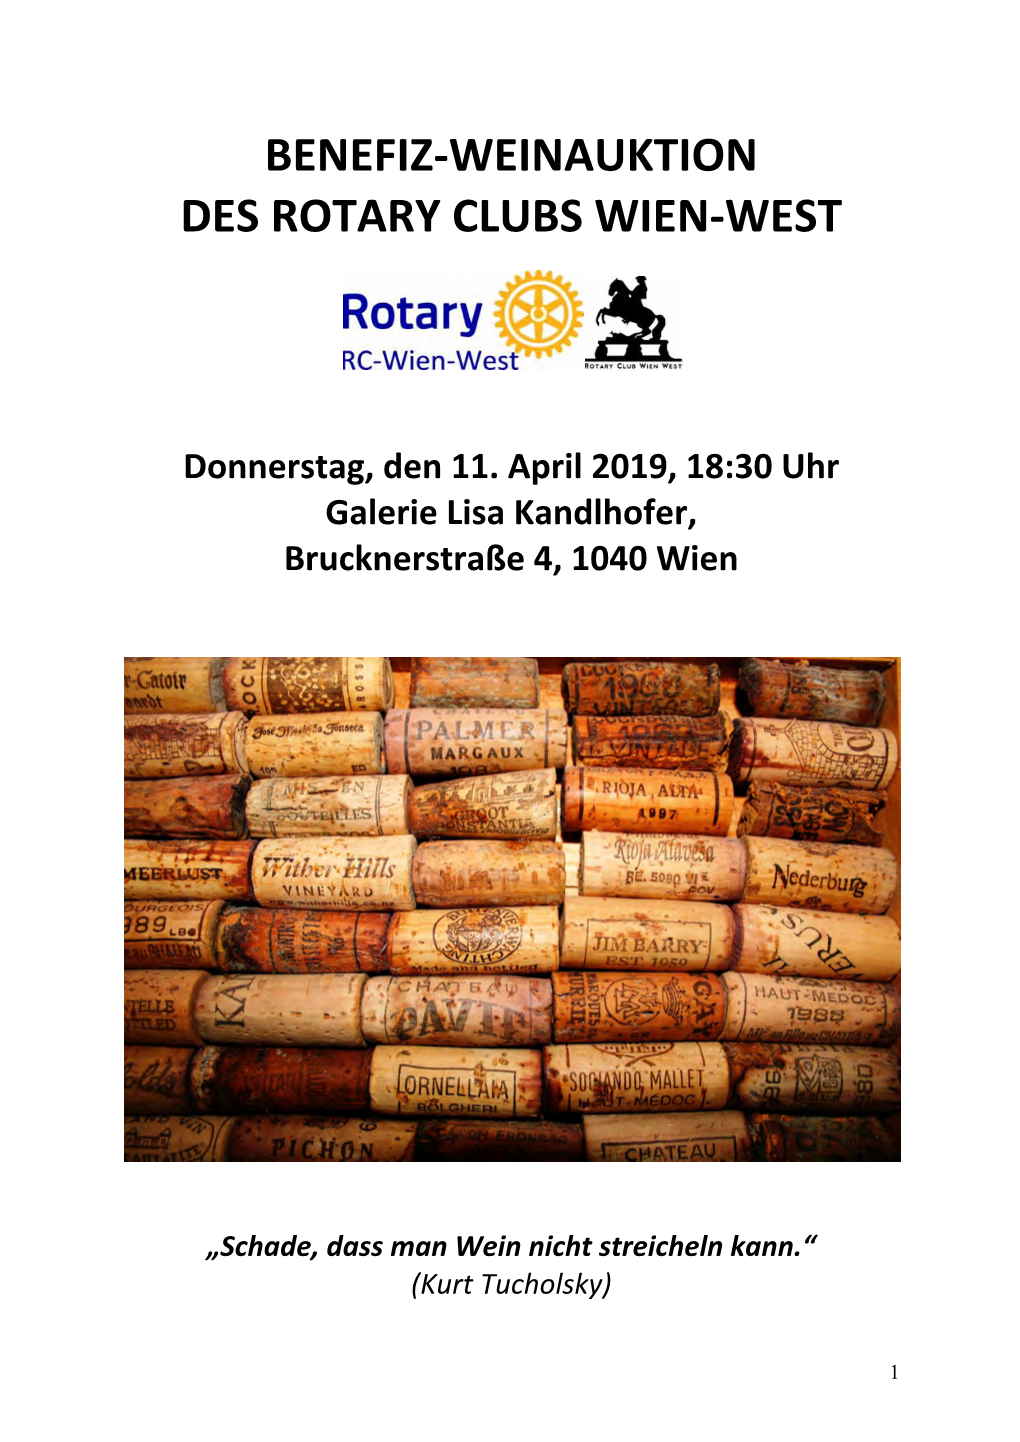 Benefiz-Weinauktion Des Rotary Clubs Wien-West